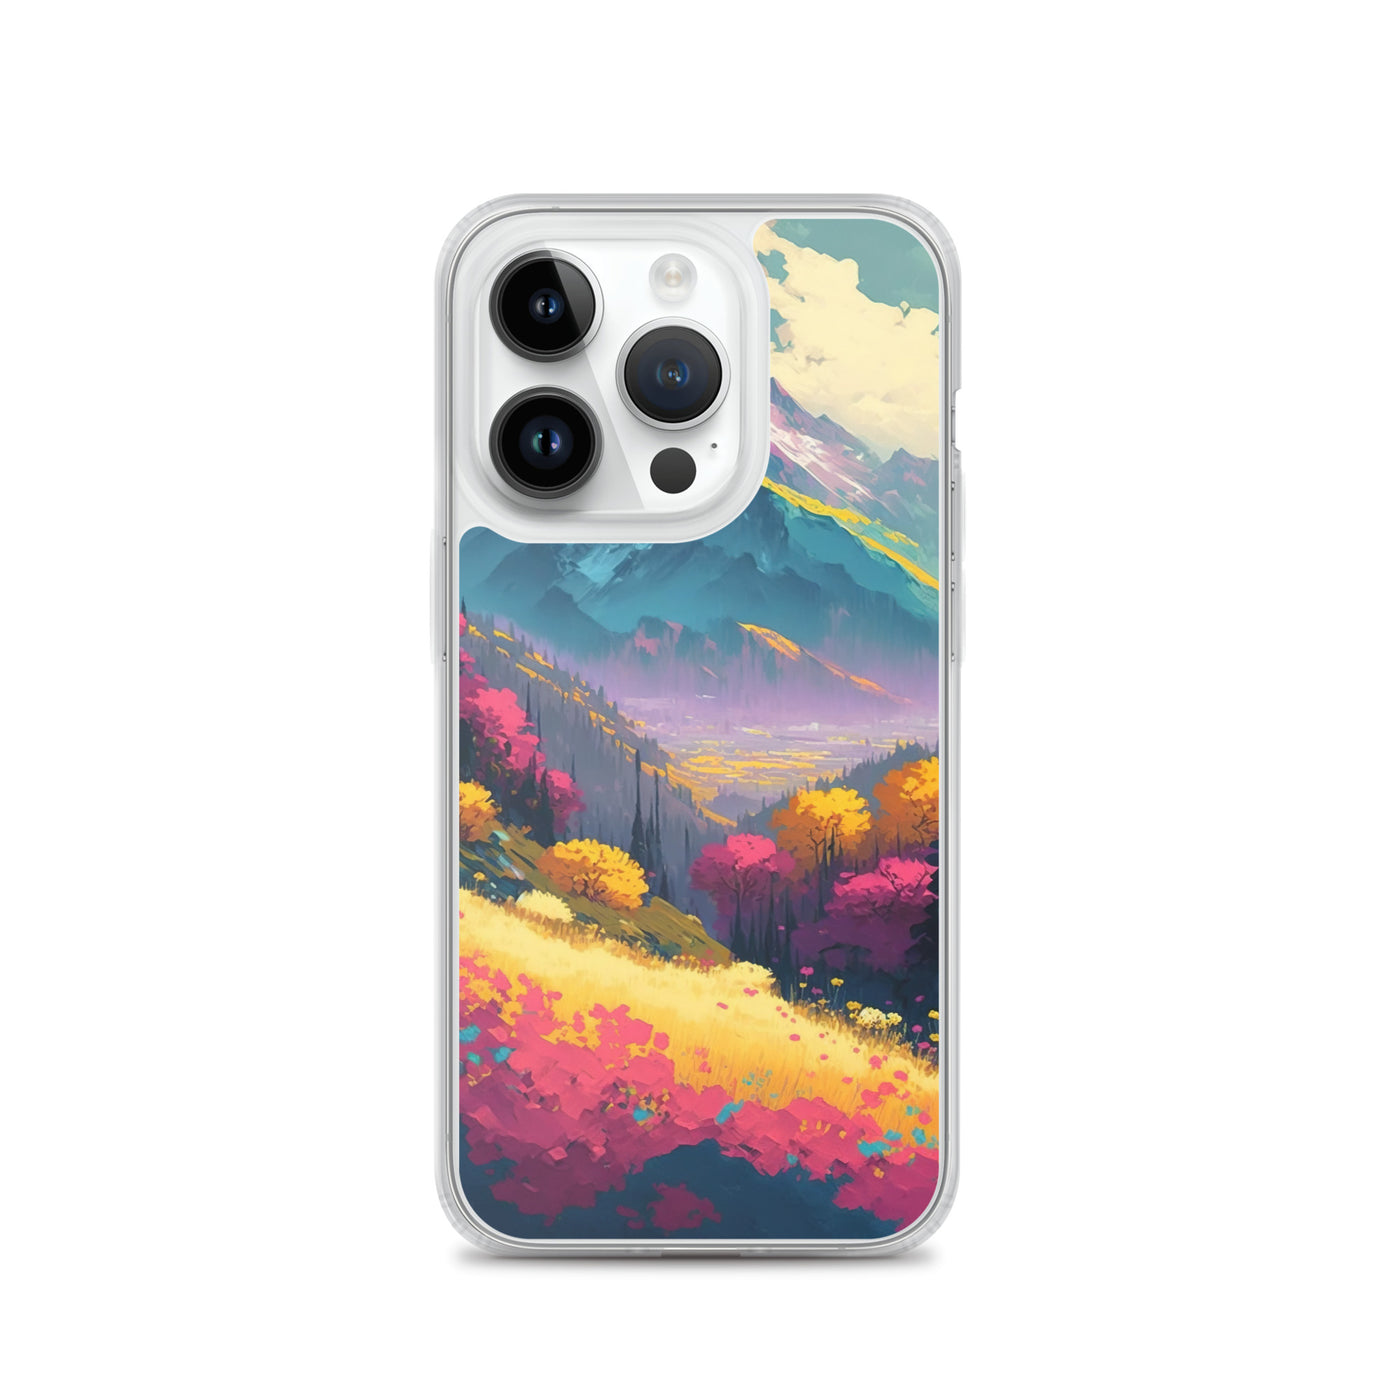 Berge, pinke und gelbe Bäume, sowie Blumen - Farbige Malerei - iPhone Schutzhülle (durchsichtig) berge xxx iPhone 14 Pro